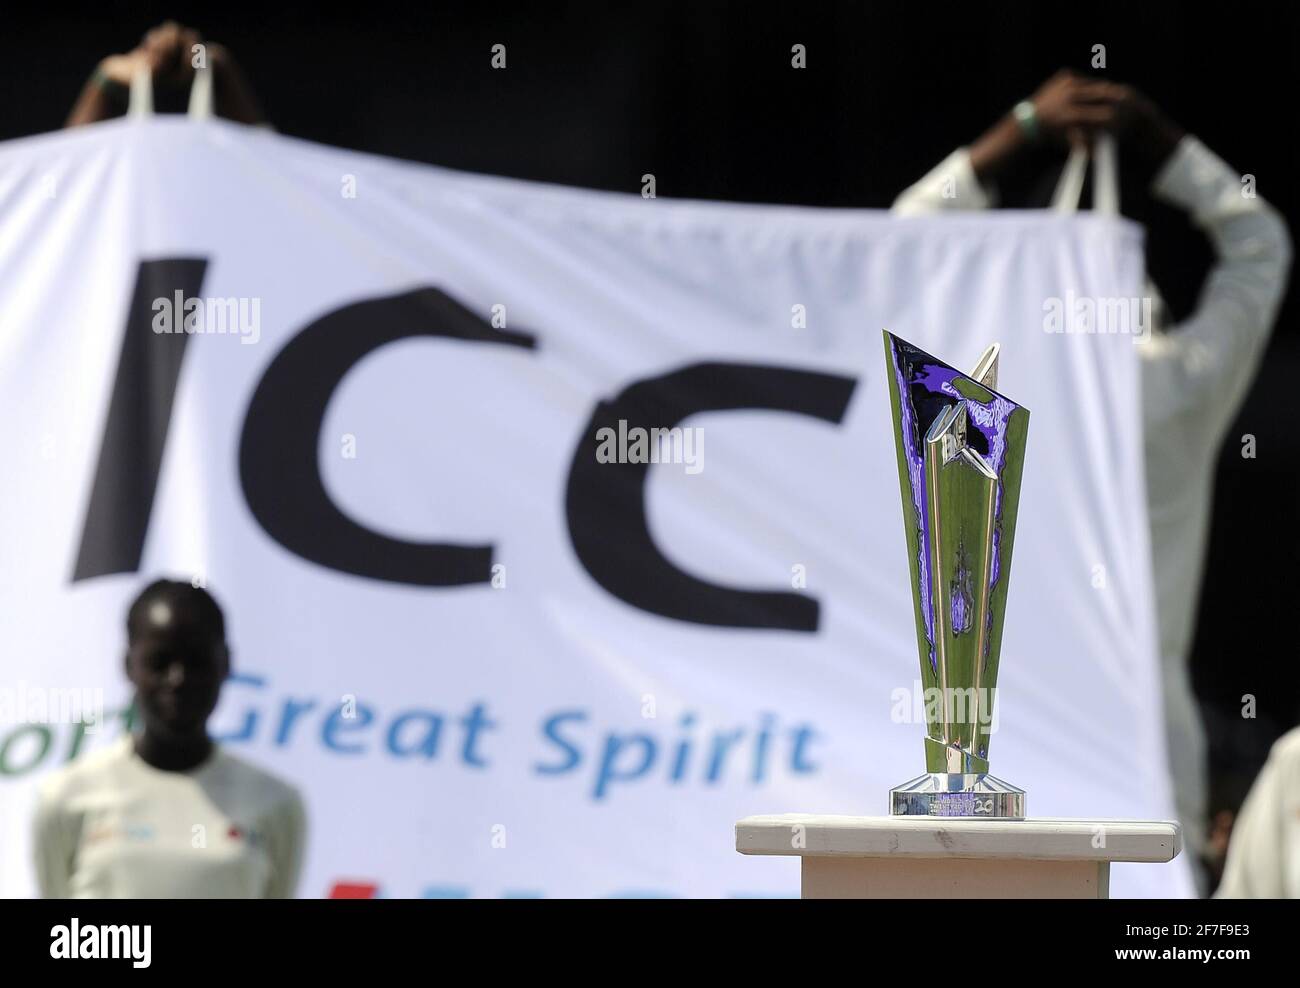 File foto datata 06-05-2010 del Trofeo ICC World Cup presso Kensington Oval, Bridgetown, Barbados. Data di emissione: Mercoledì 7 aprile 2021. Foto Stock